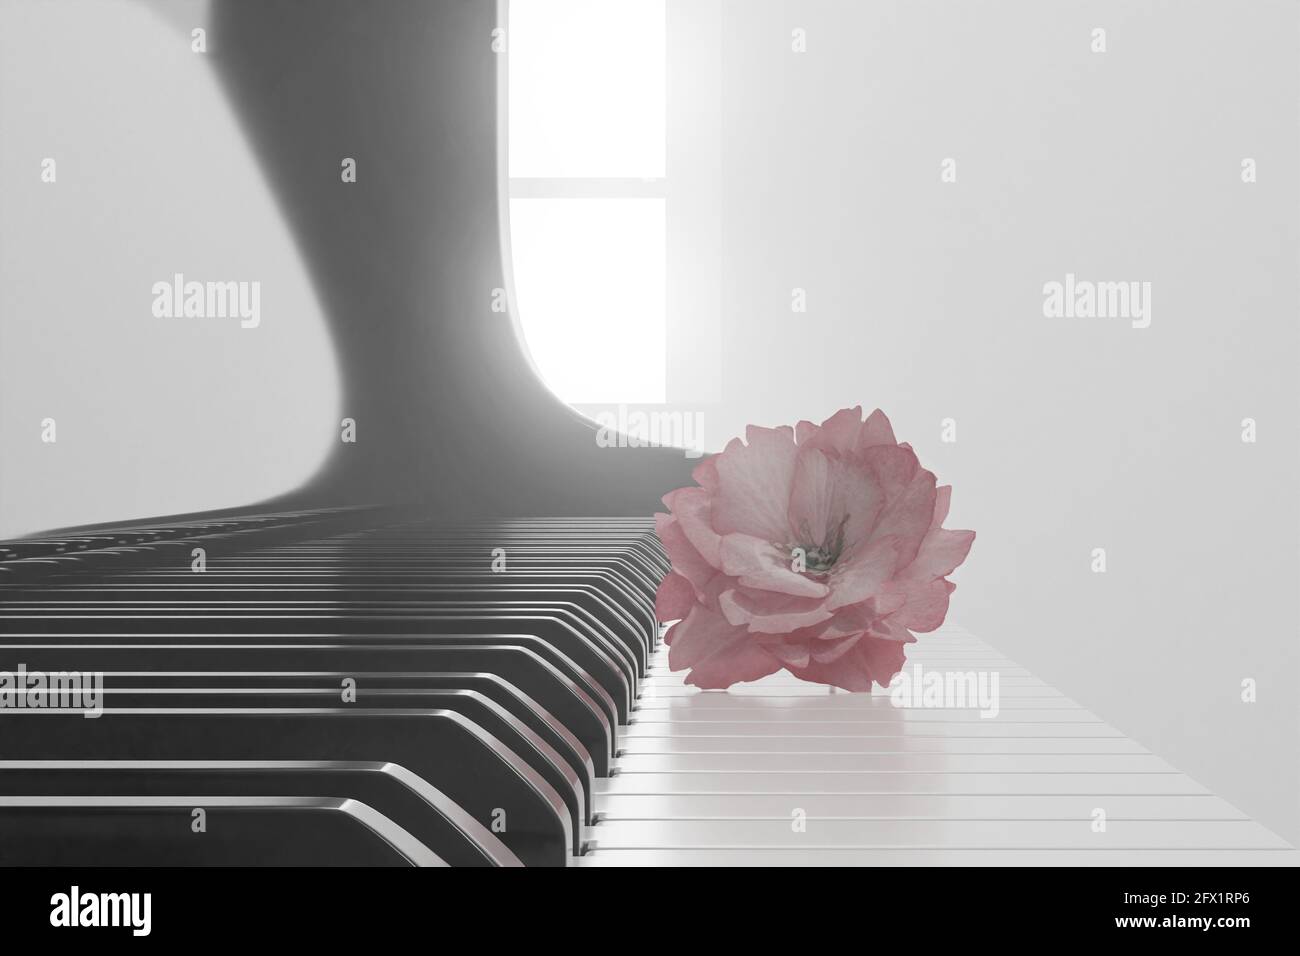 Clavier piano : 121 939 images, photos de stock, objets 3D et